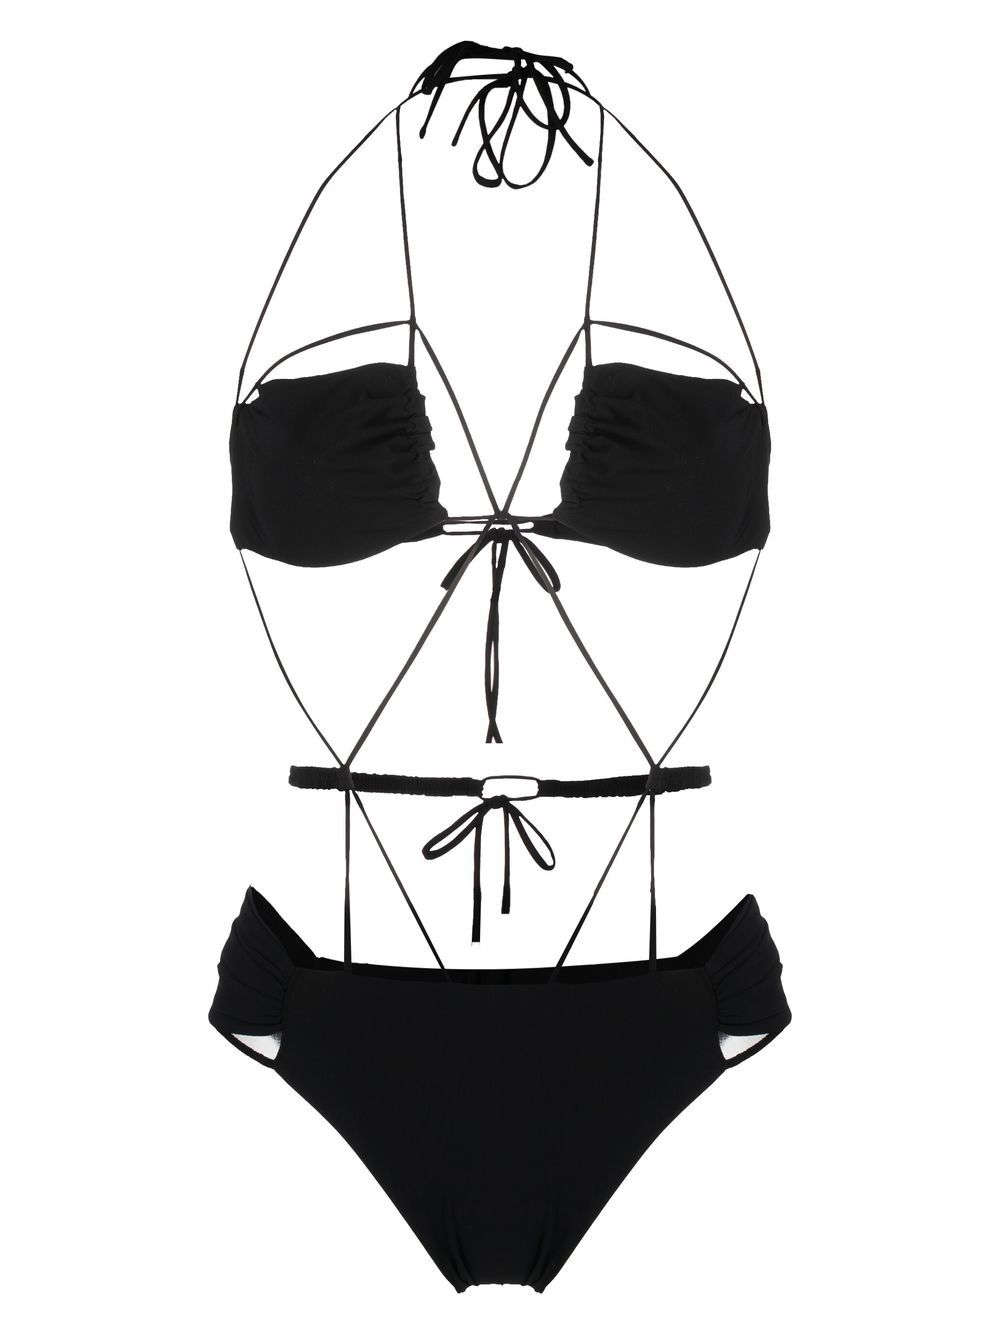 Nensi Dojaka multi-strap design swimsuit - Black von Nensi Dojaka